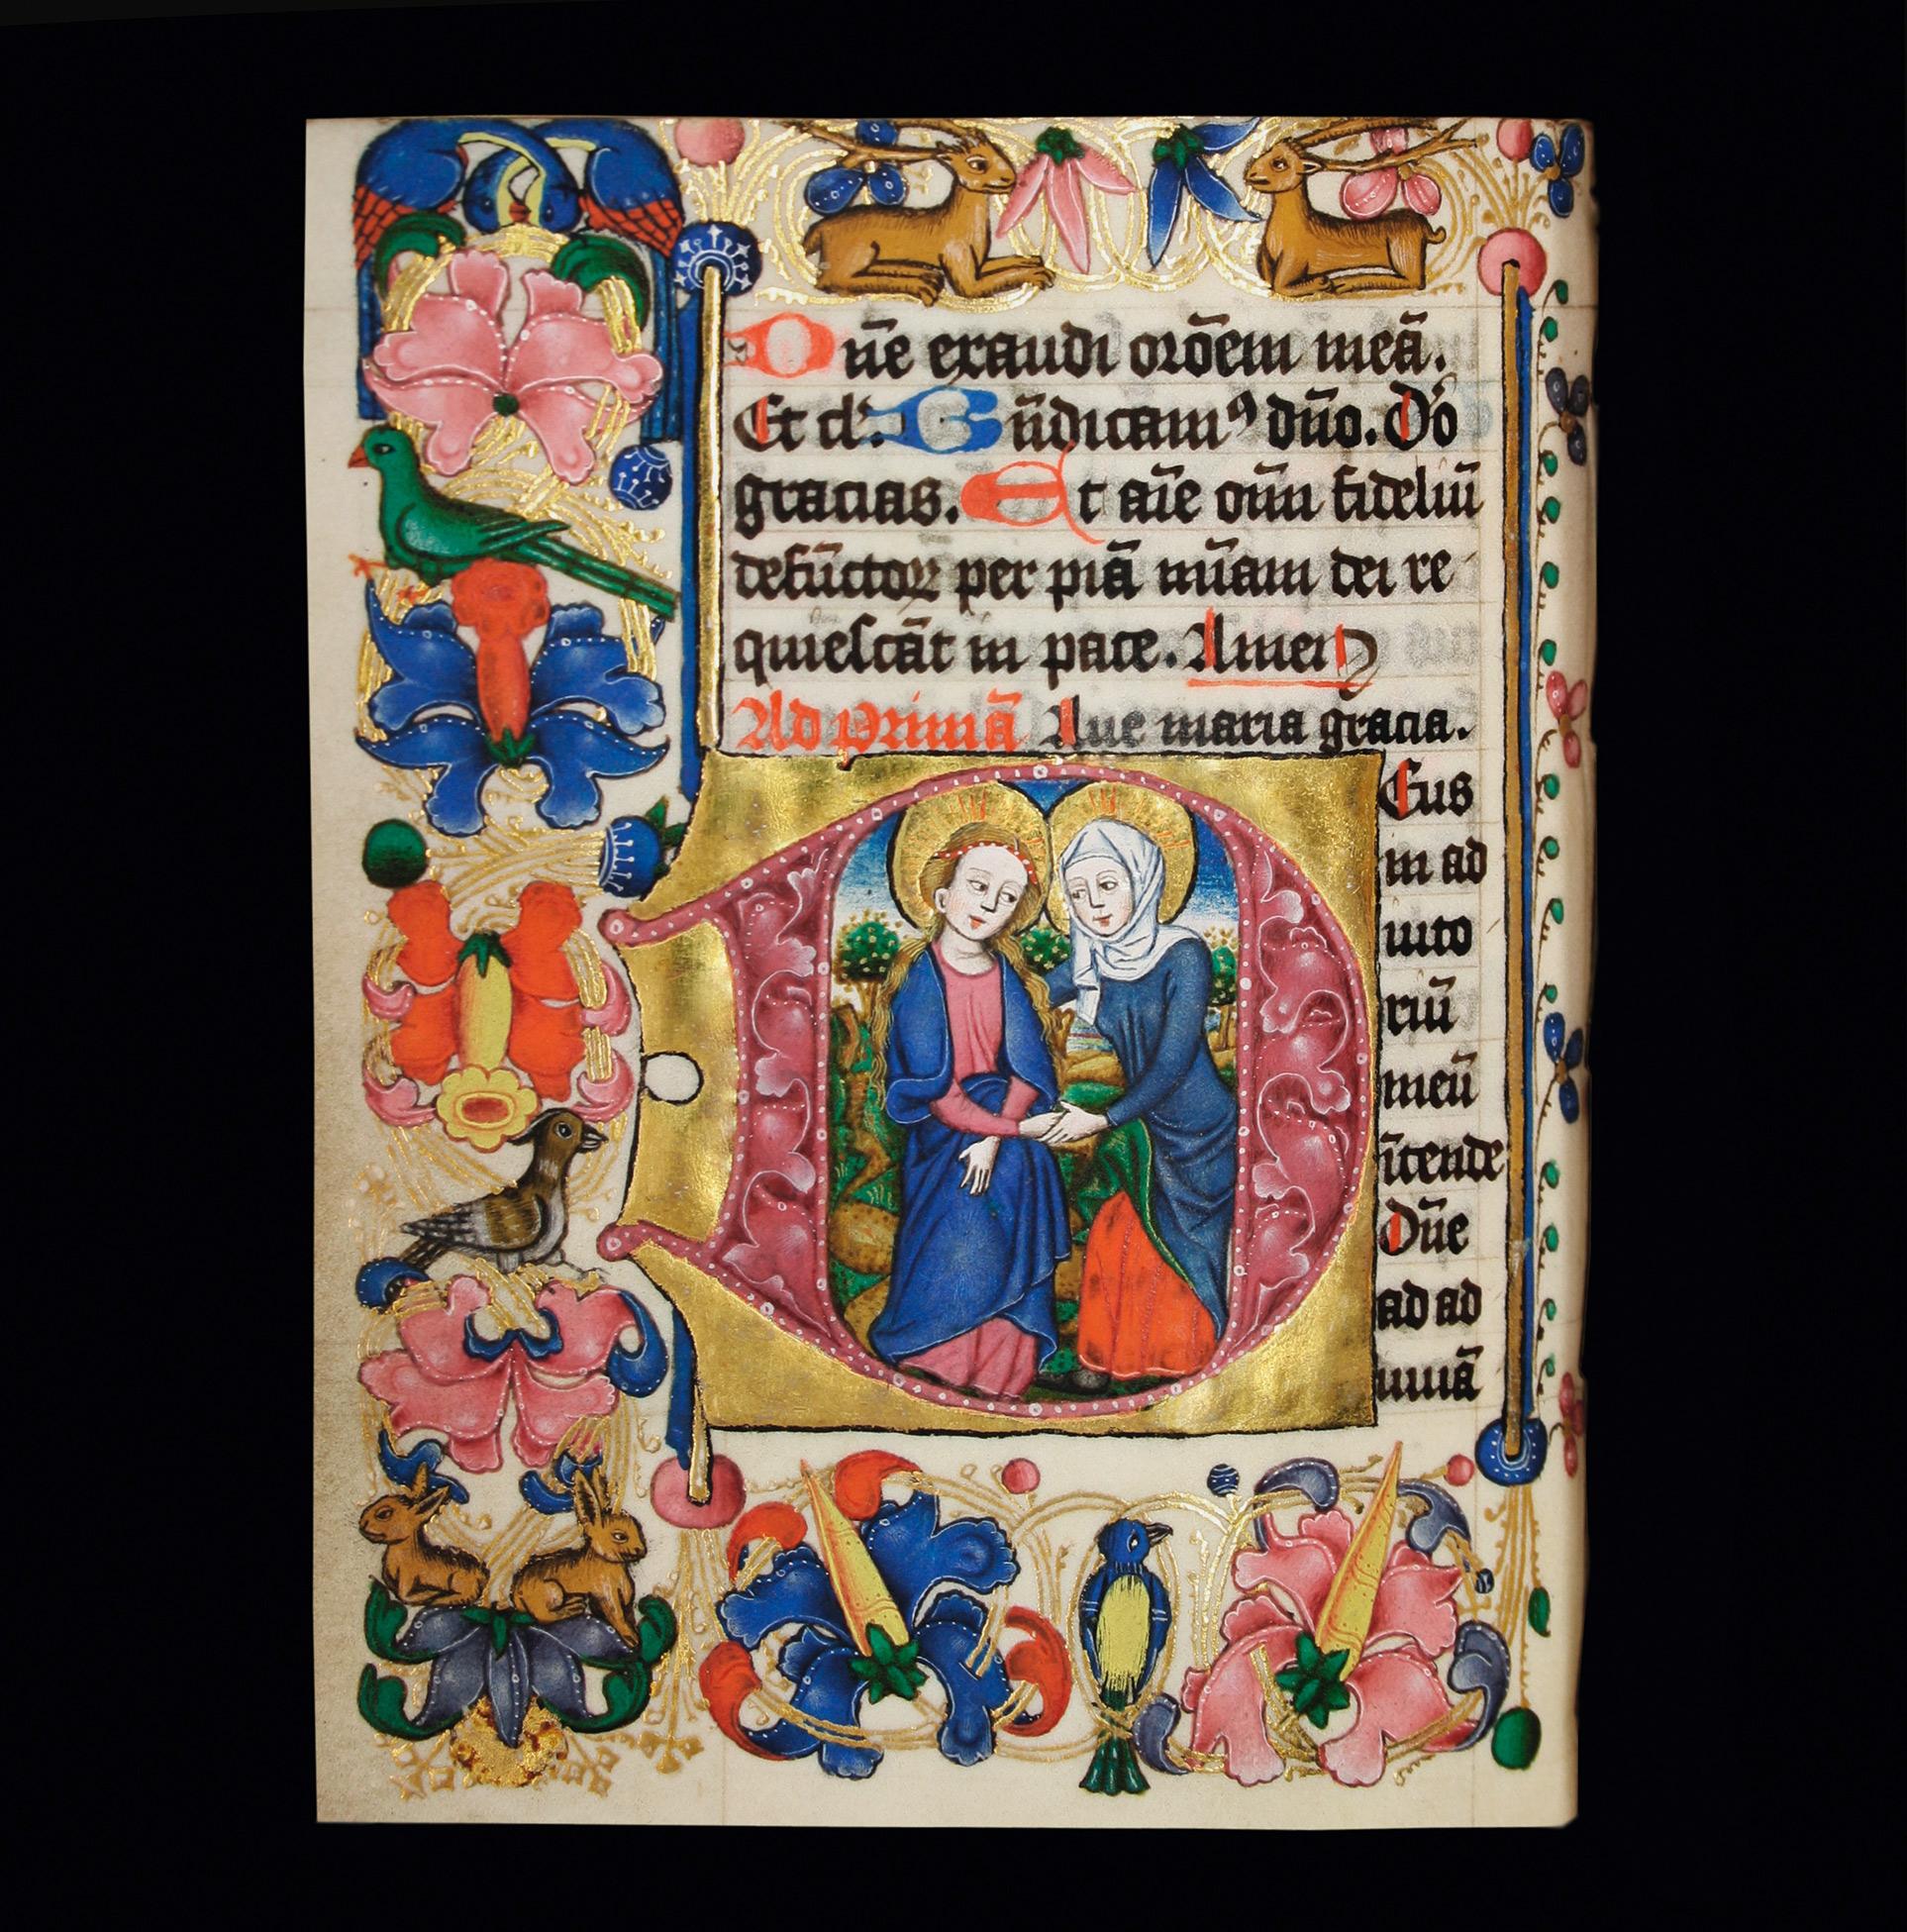 Köln, Initiale mit Maria und Elisabeth, Seite aus einem Stundenbuch, um 1480.